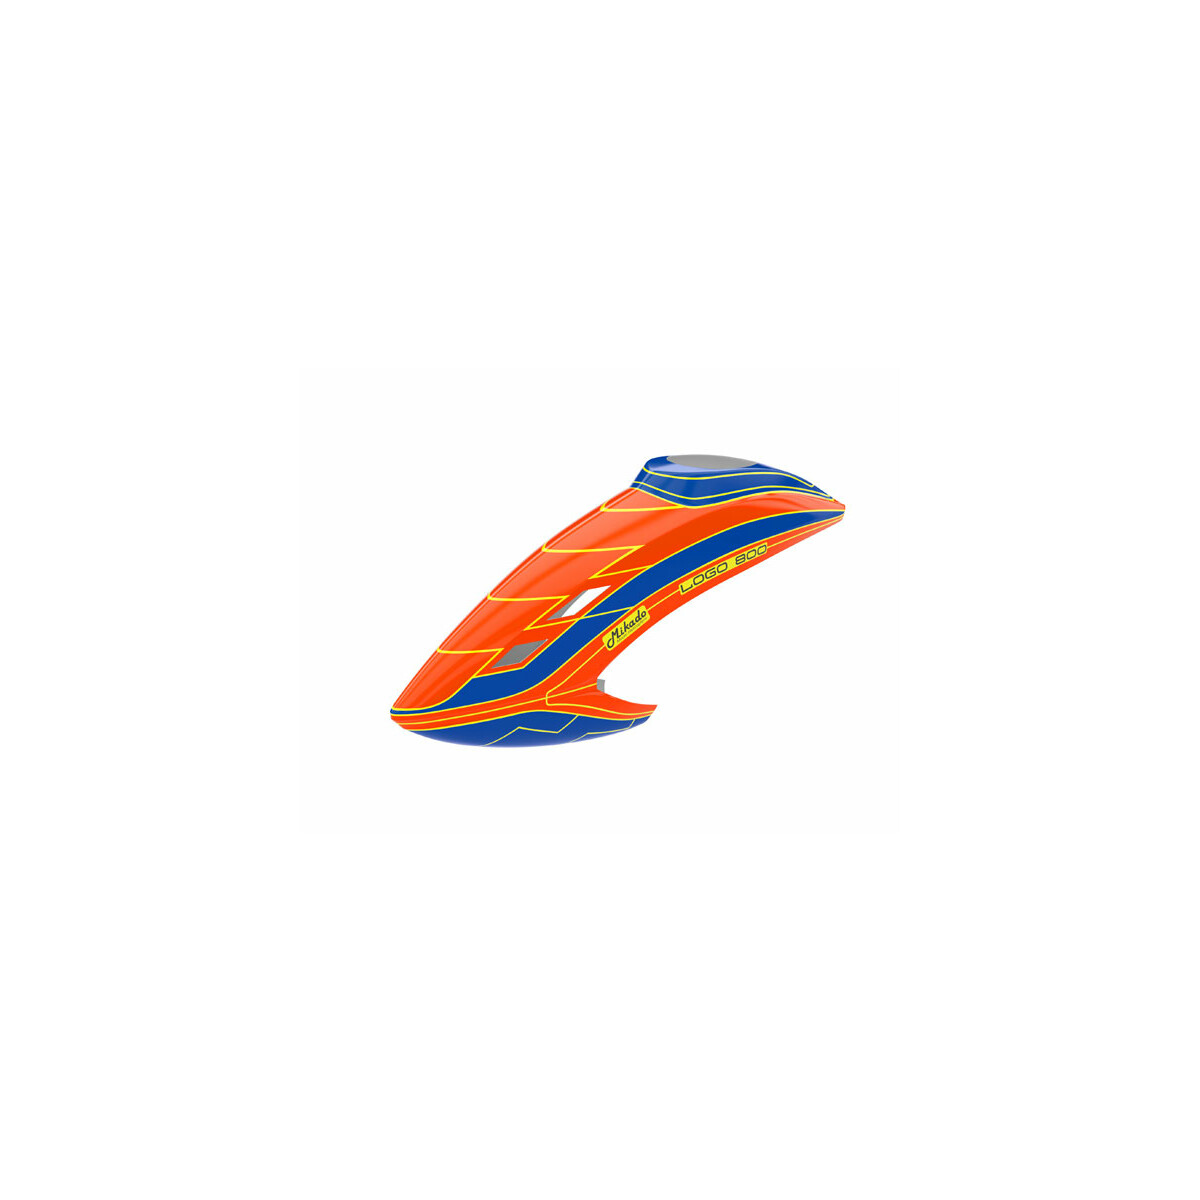 Haube LOGO 800 neon-orange/blau